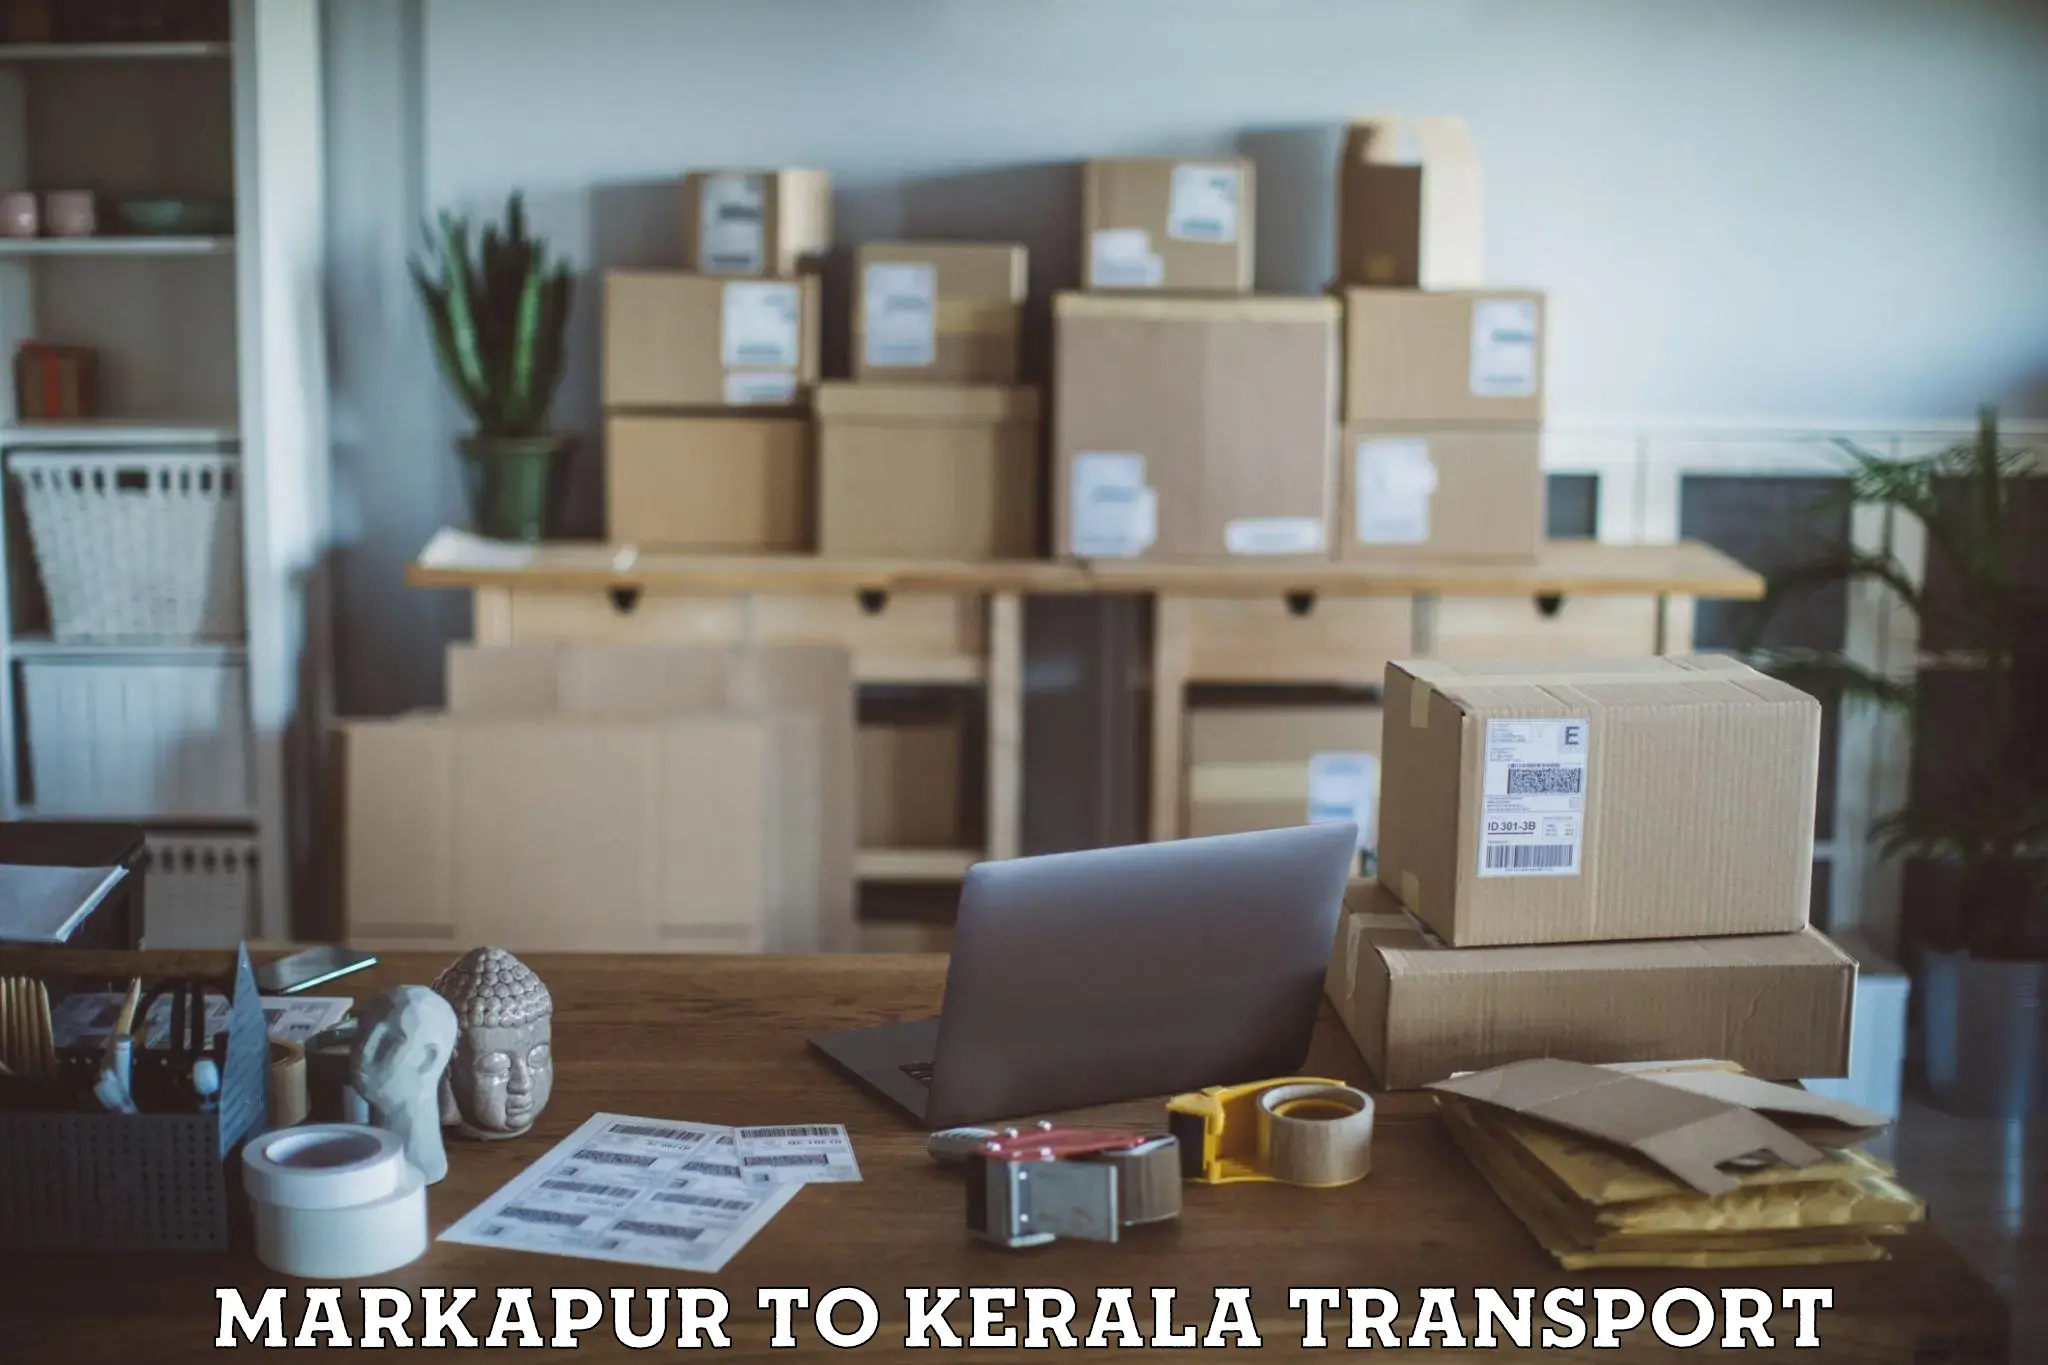 International cargo transportation services Markapur to Cochin Port Kochi